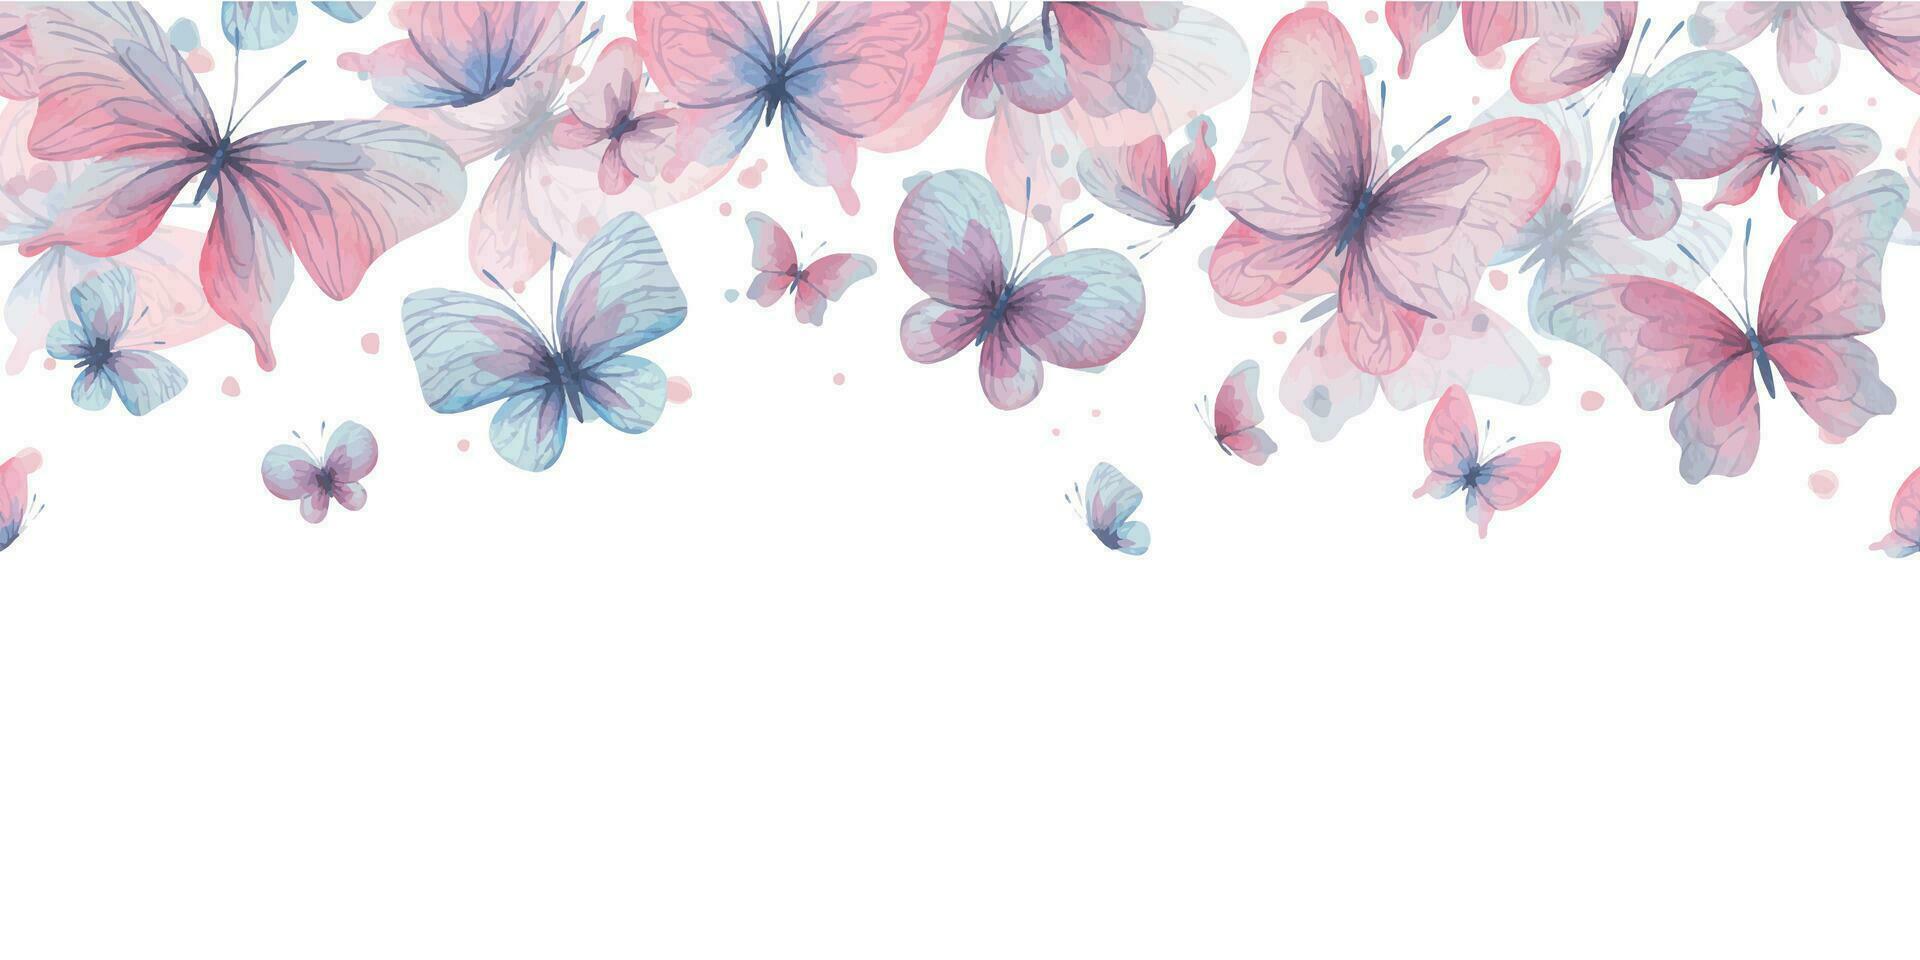 Schmetterlinge sind Rosa, Blau, lila, fliegend, zart mit Flügel und spritzt von malen. Hand gezeichnet Aquarell Illustration. rahmen, Vorlage, Kranz auf ein Weiß Hintergrund, zum Design vektor